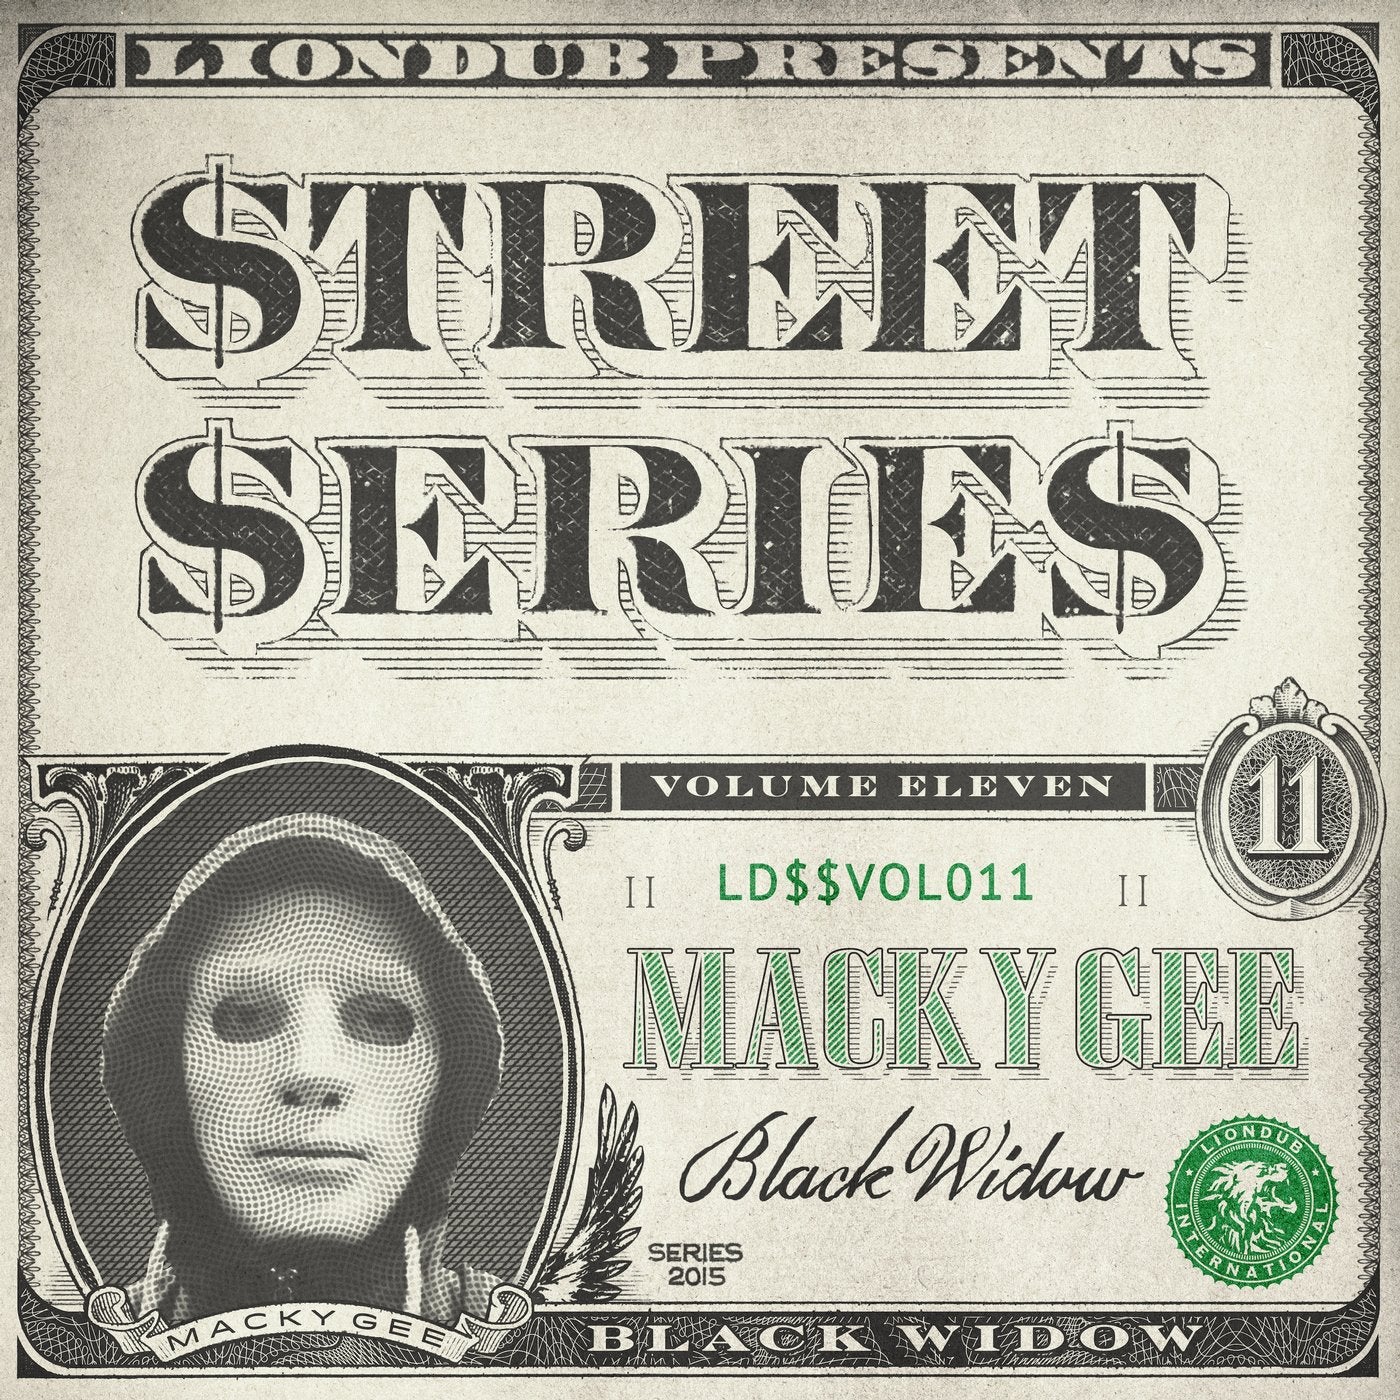 Liondub Street Series Vol. 11 - Black Widow